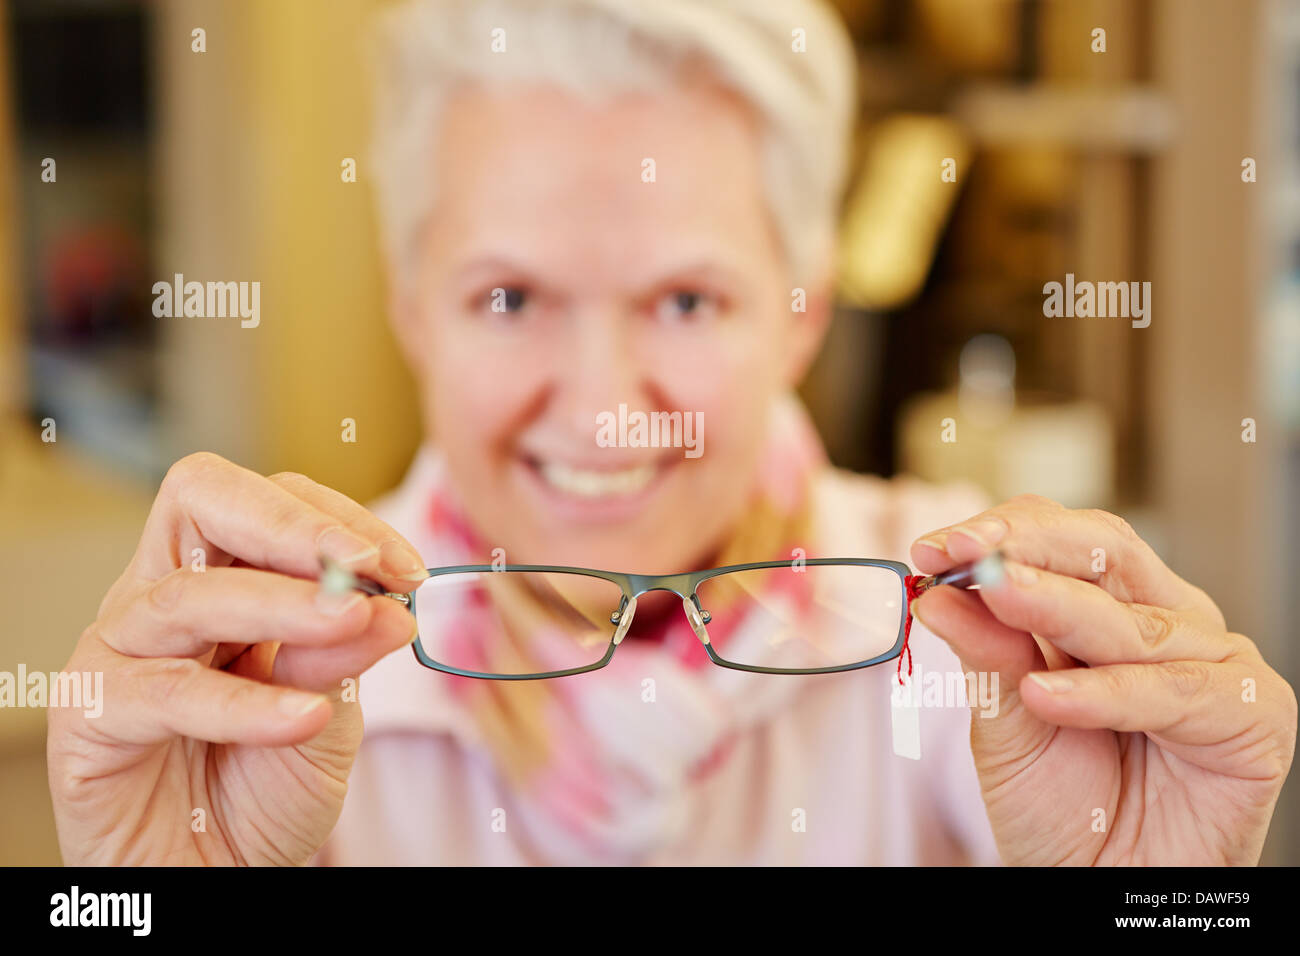 Óptico senior sonriente sosteniendo anteojos nuevos en sus manos Foto de stock